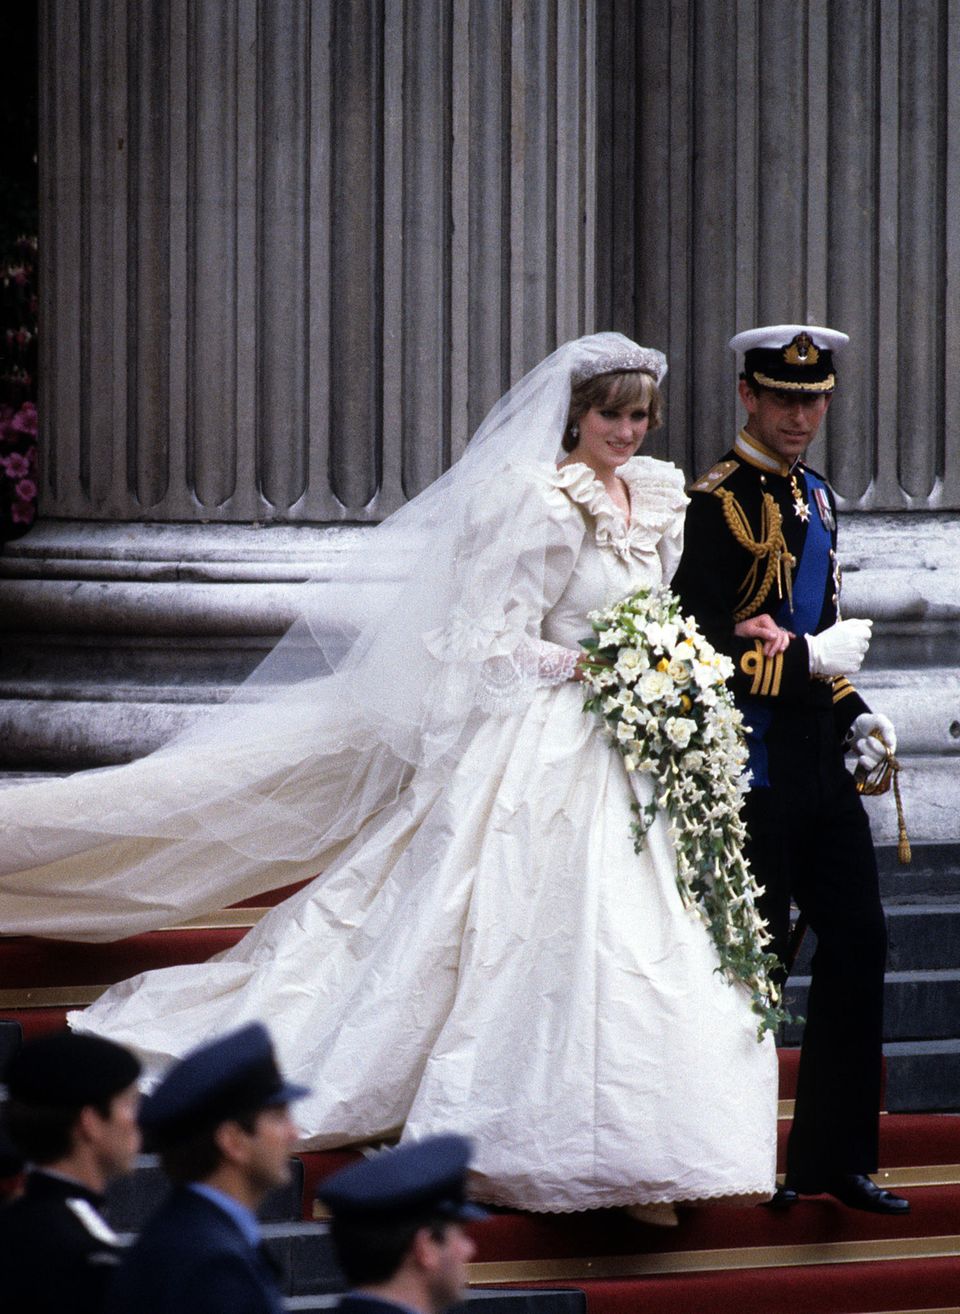 Heute vor genau 40 Jahren haben Lady Diana und Prinz Charles geheiratet. Ihr aufwendiges Hochzeitskleid im 80er-Jahre-Stil bleibt vielen bis heute in Erinnerung.